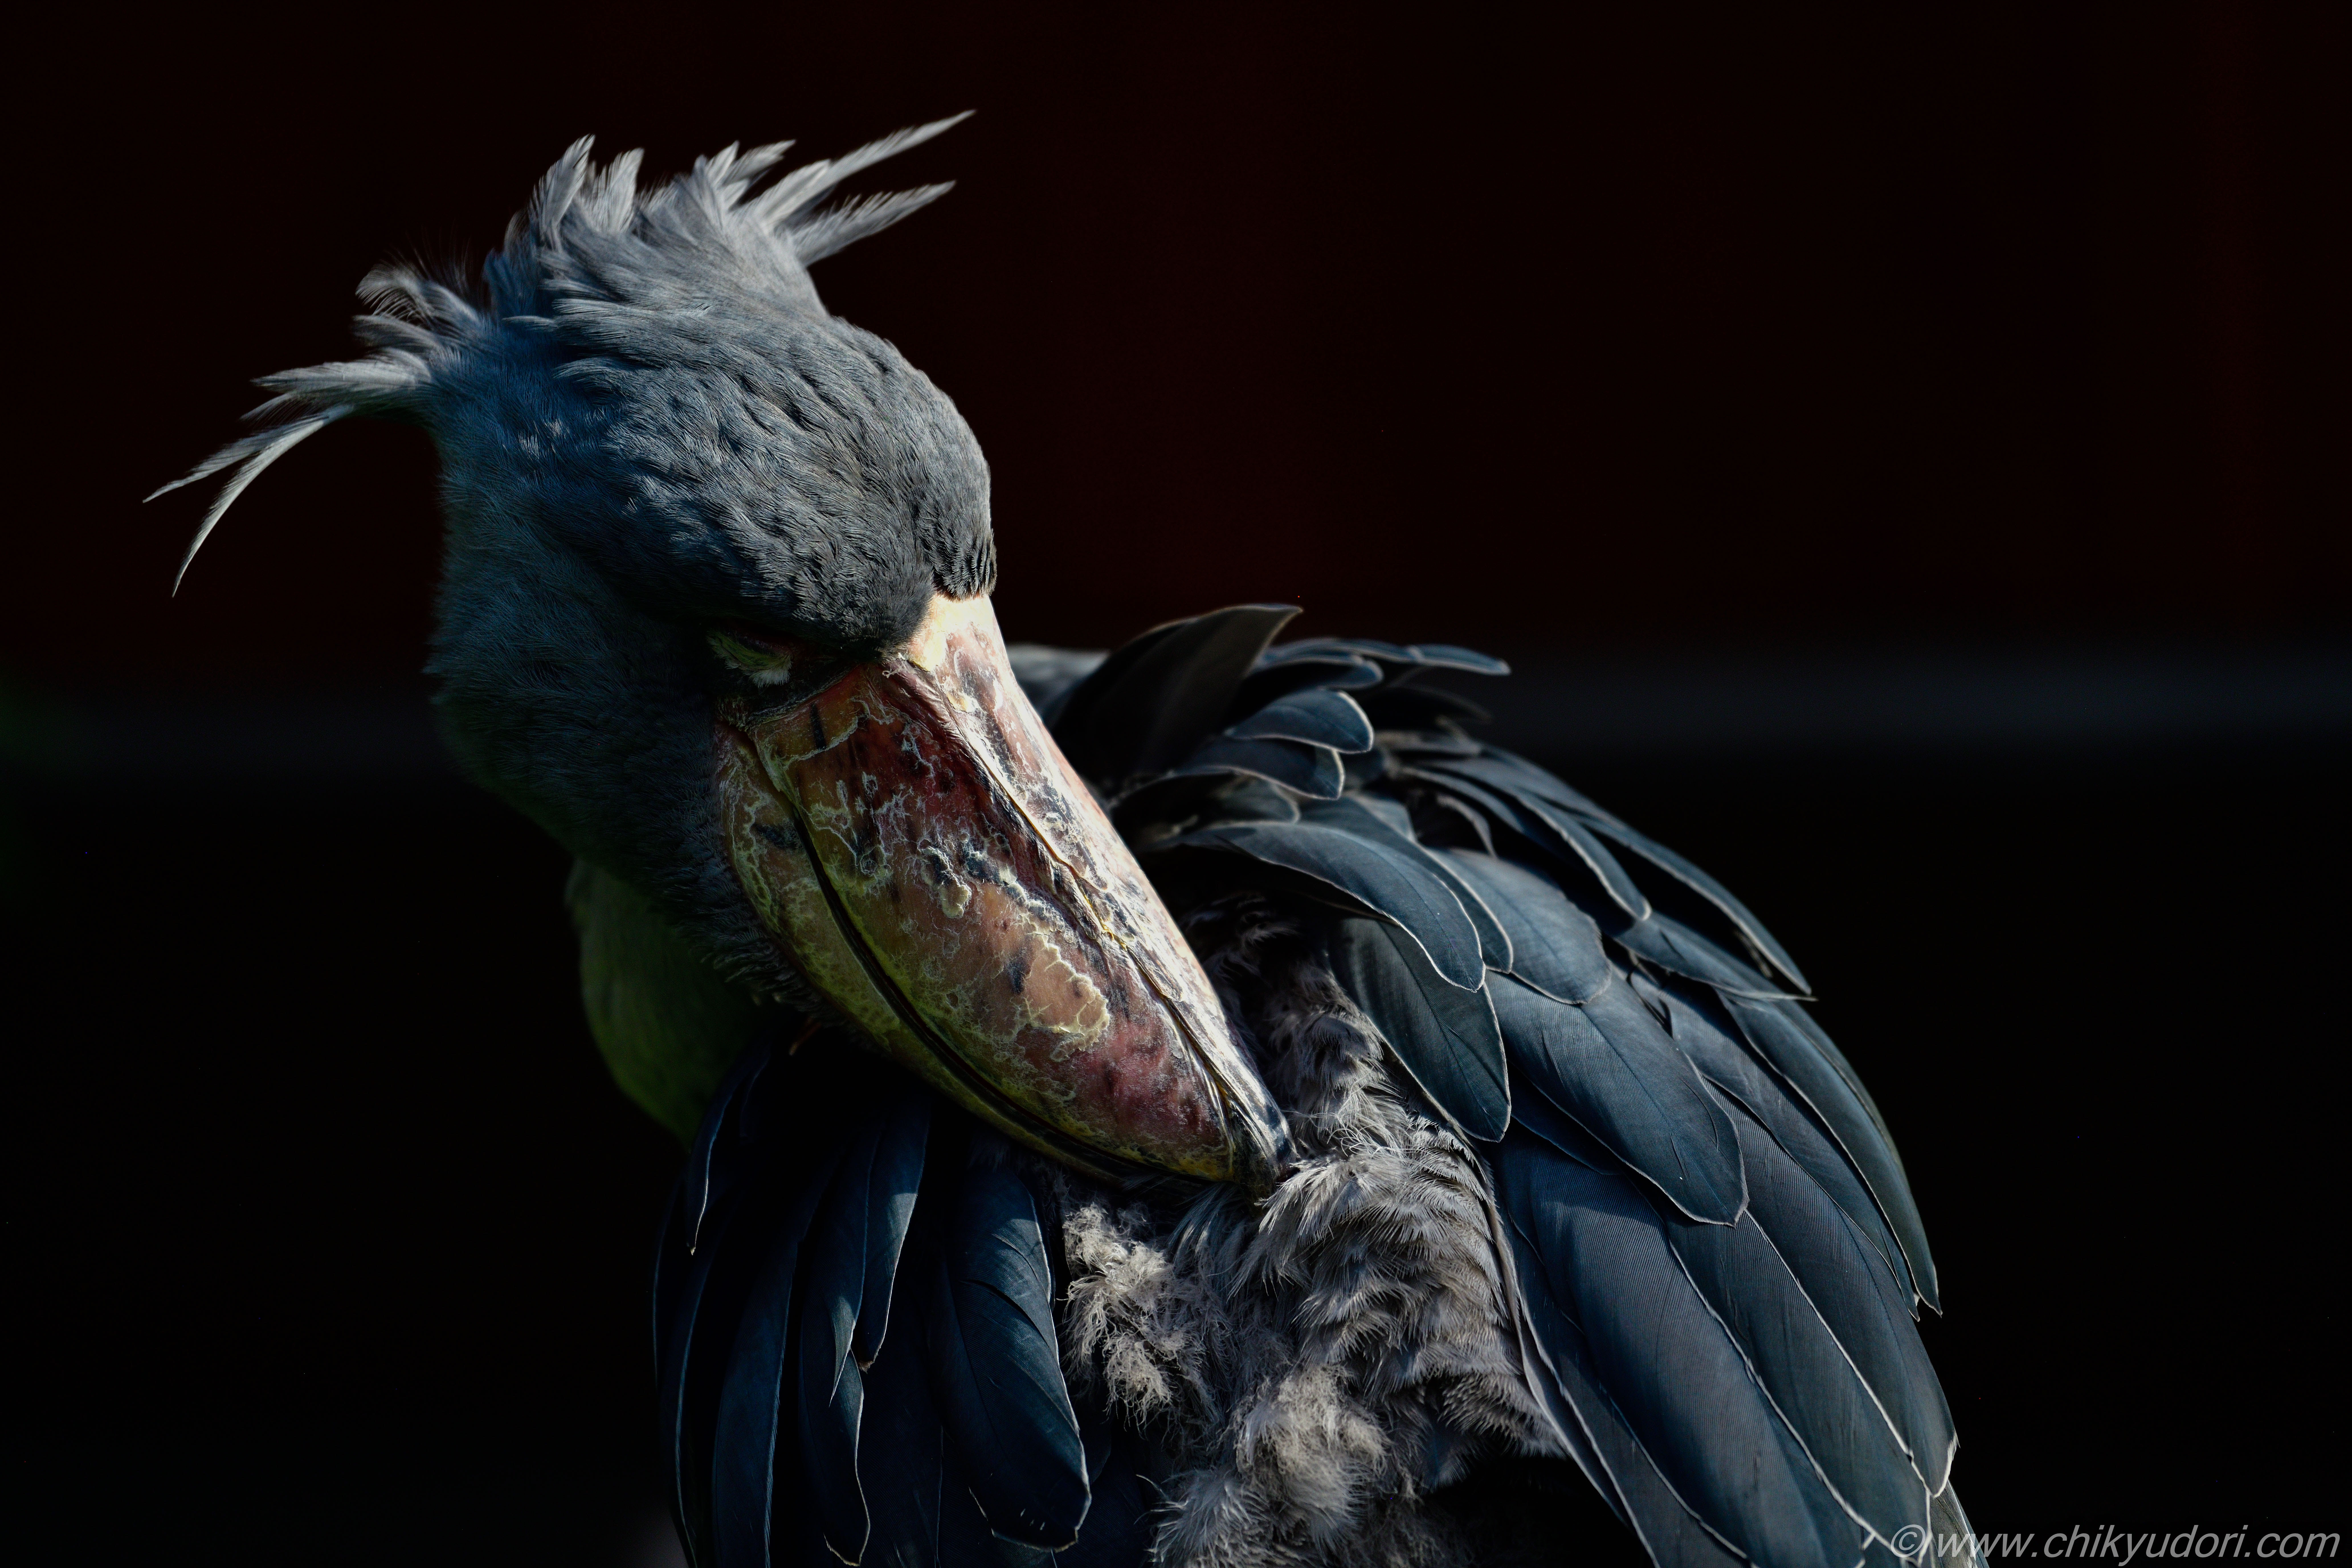 動かない鳥 ハシビロコウ 鳥と触れ合うテーマパーク 掛川花鳥園 地球の撮り方